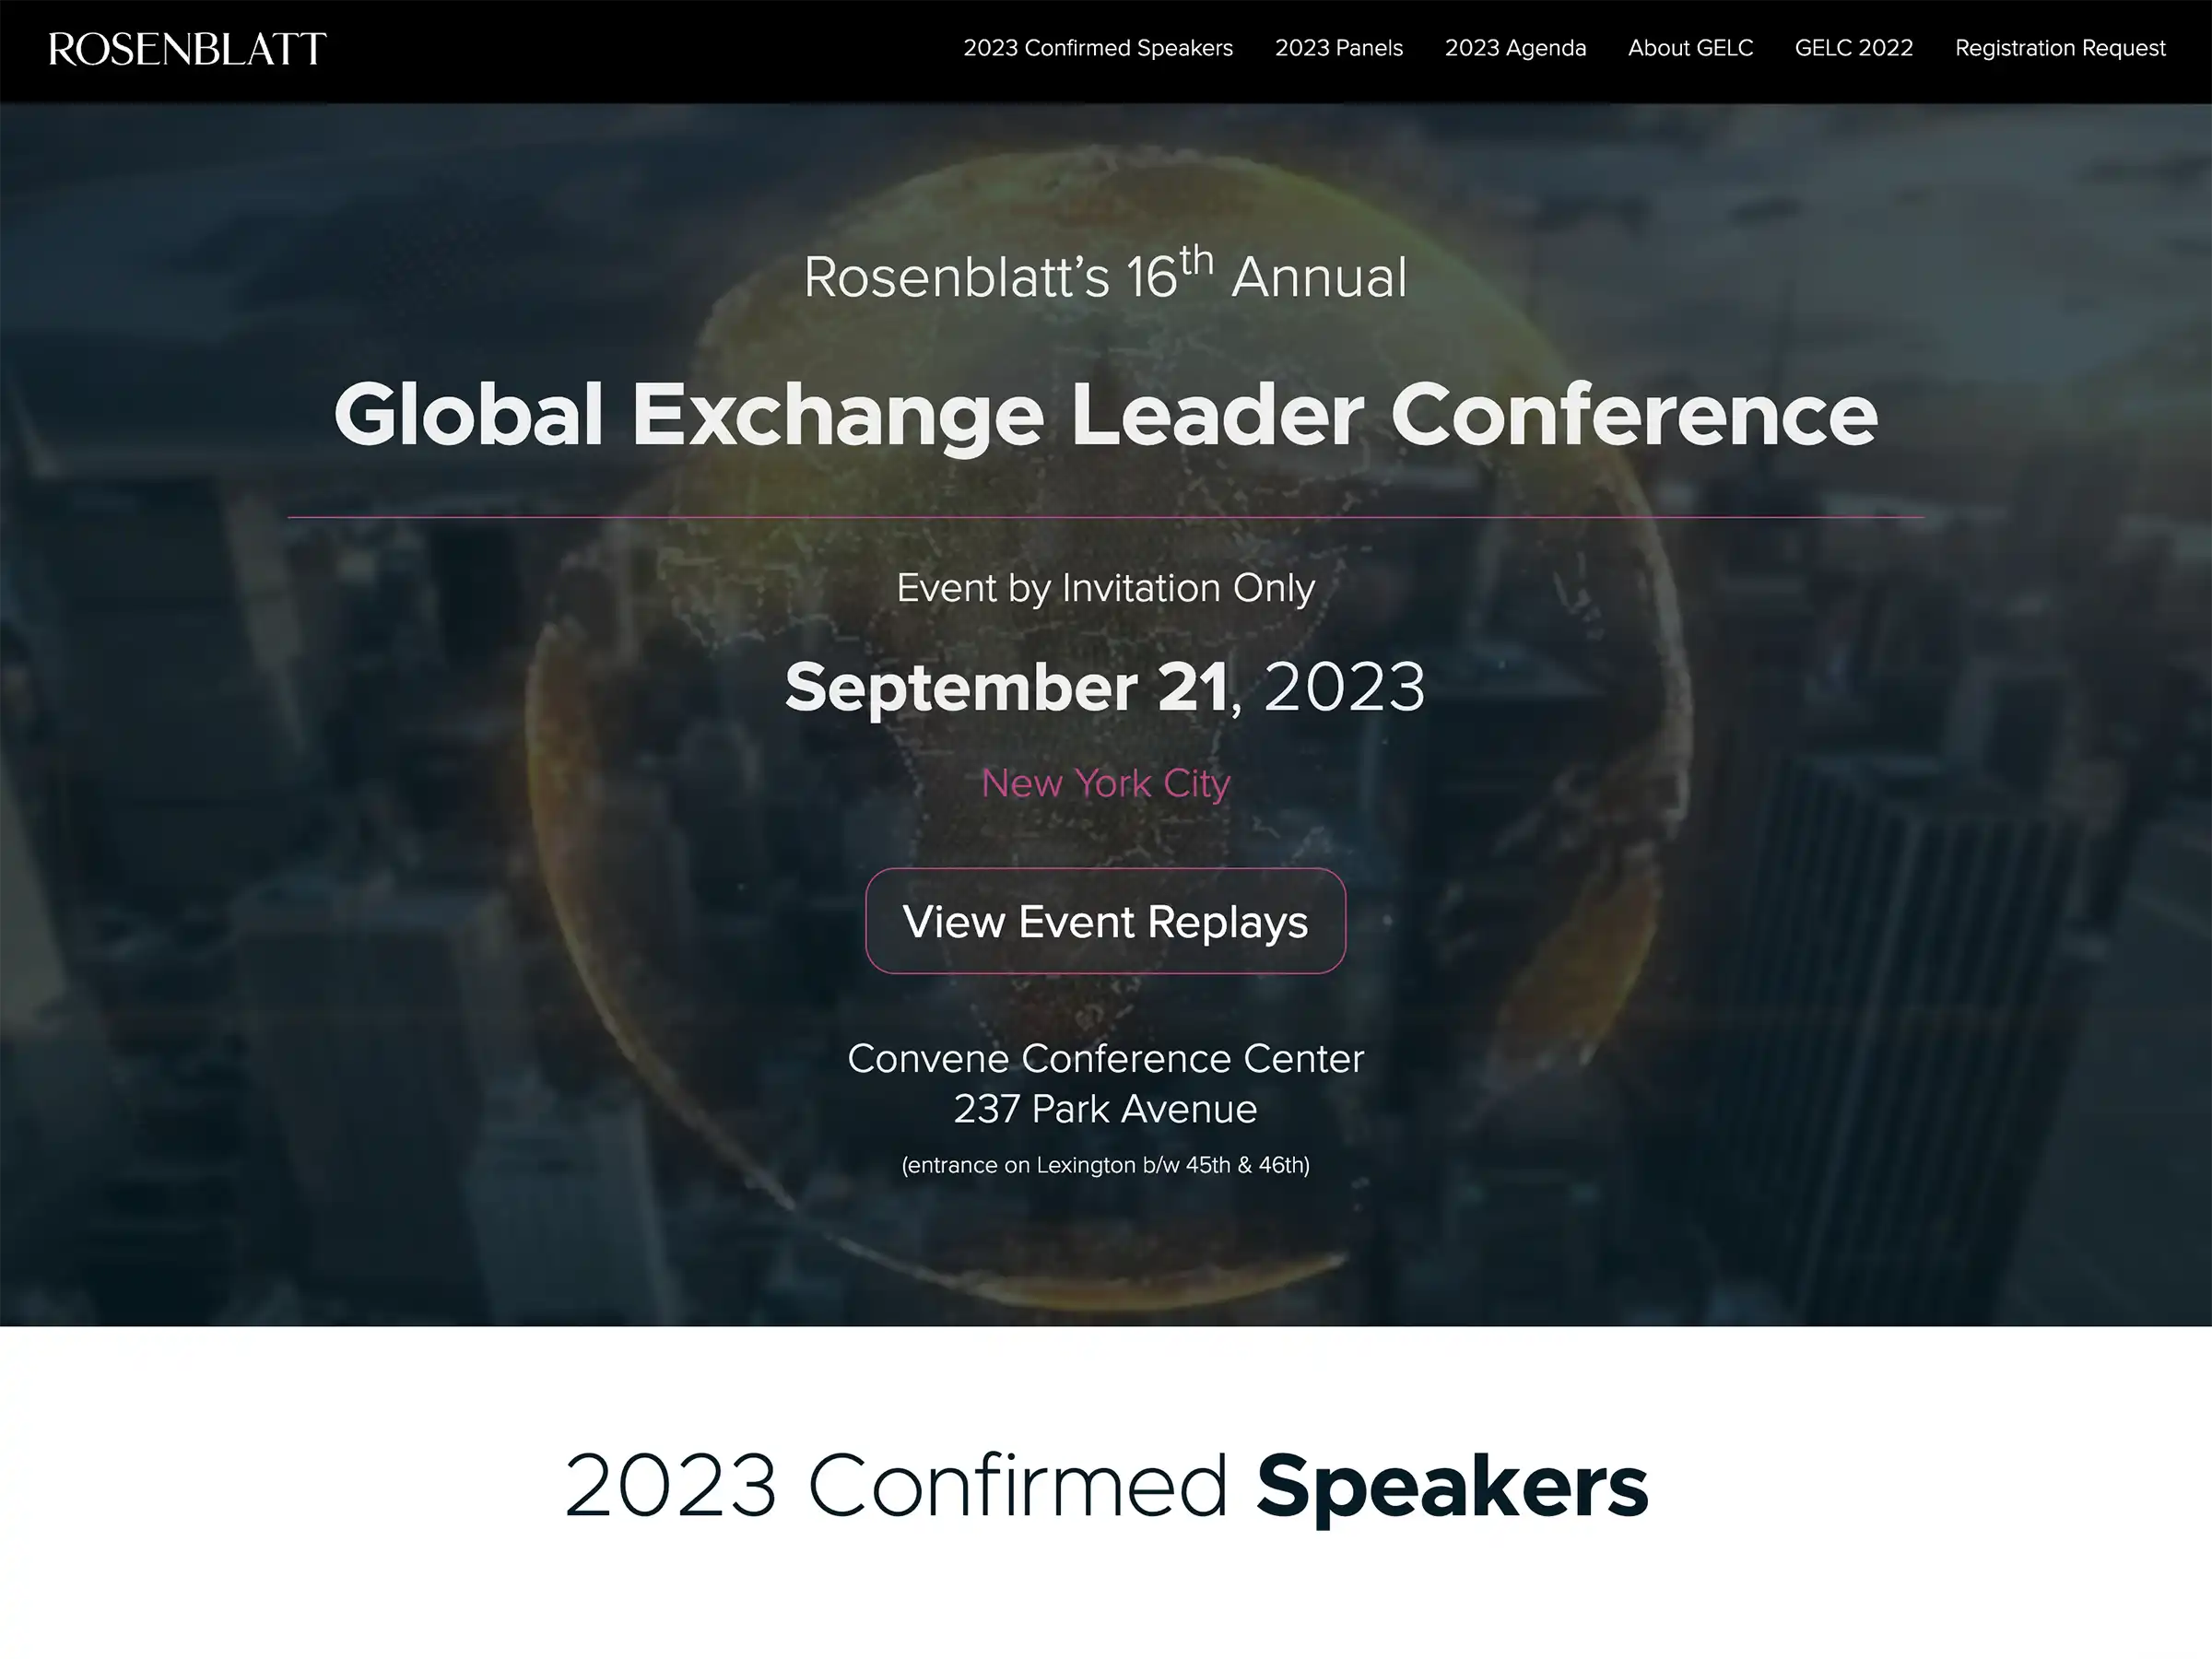 Global Exchange Leader Conference website
